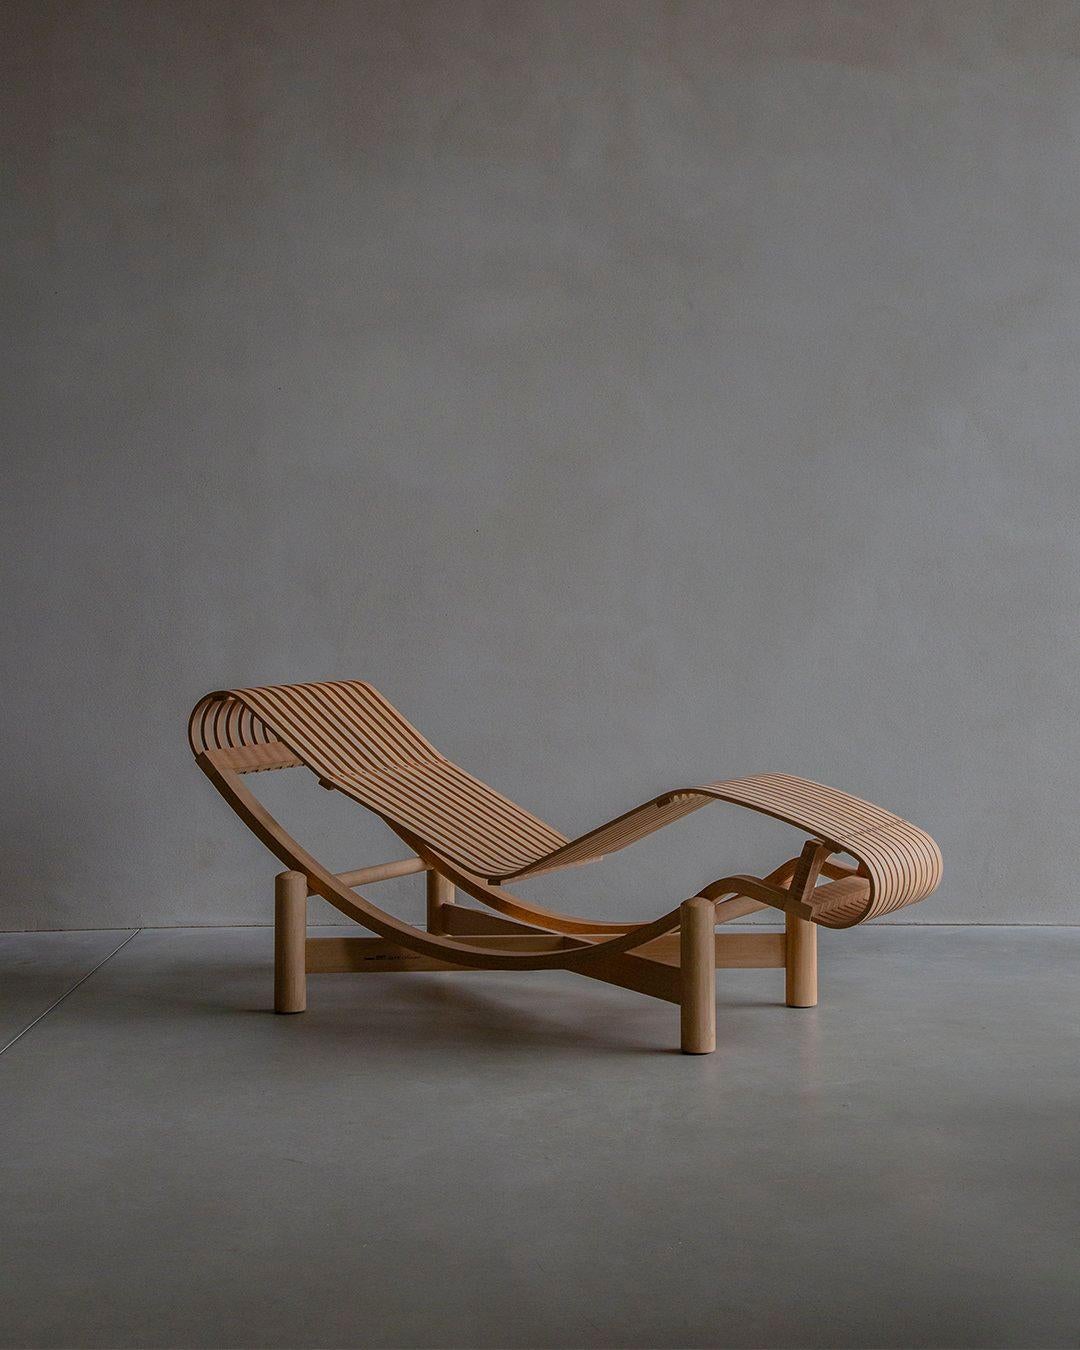 Chef-d'œuvre historique du mobilier, la chaise longue '522 Tokyo' de Charlotte Perriand témoigne d'un design exceptionnel. Conceptualisée à l'origine en 1940, cette pièce a été commercialisée en 2011 sous la production de Cassina. Fabriquée en